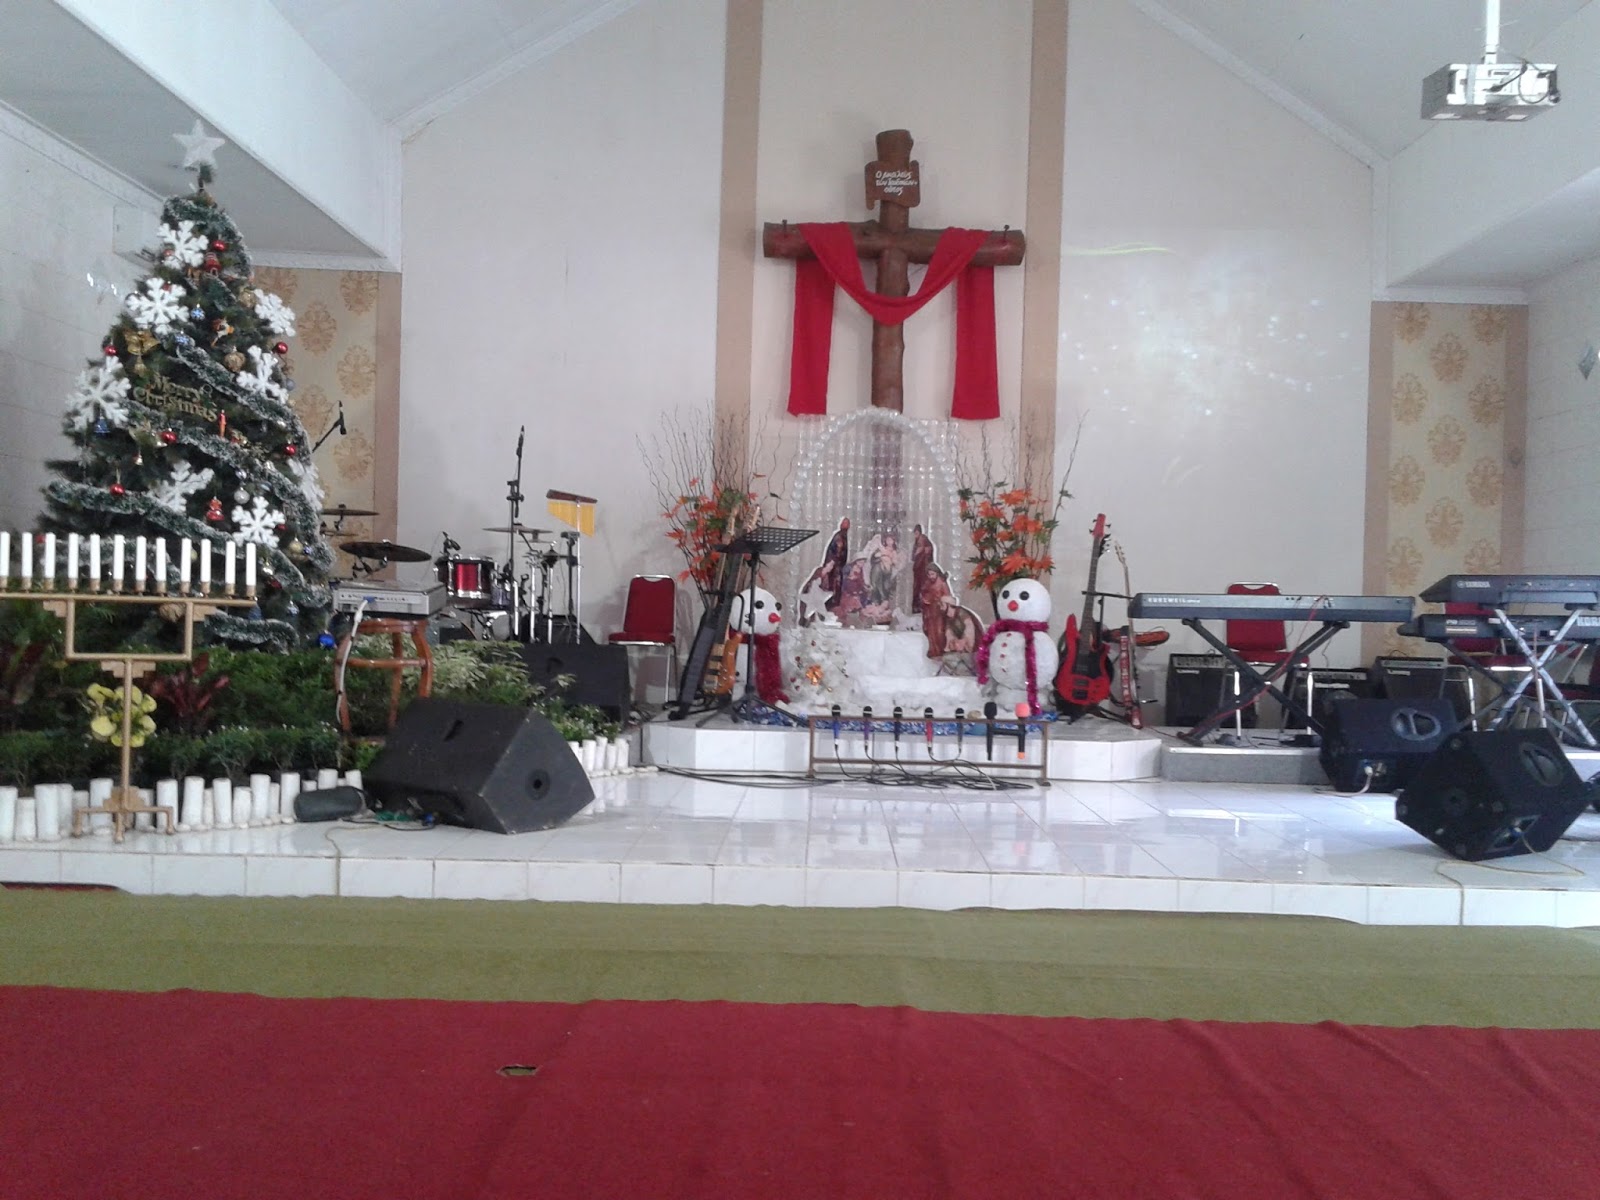  Gambar  Dekorasi Natal Dalam  Gereja  Cek Bahan Bangunan